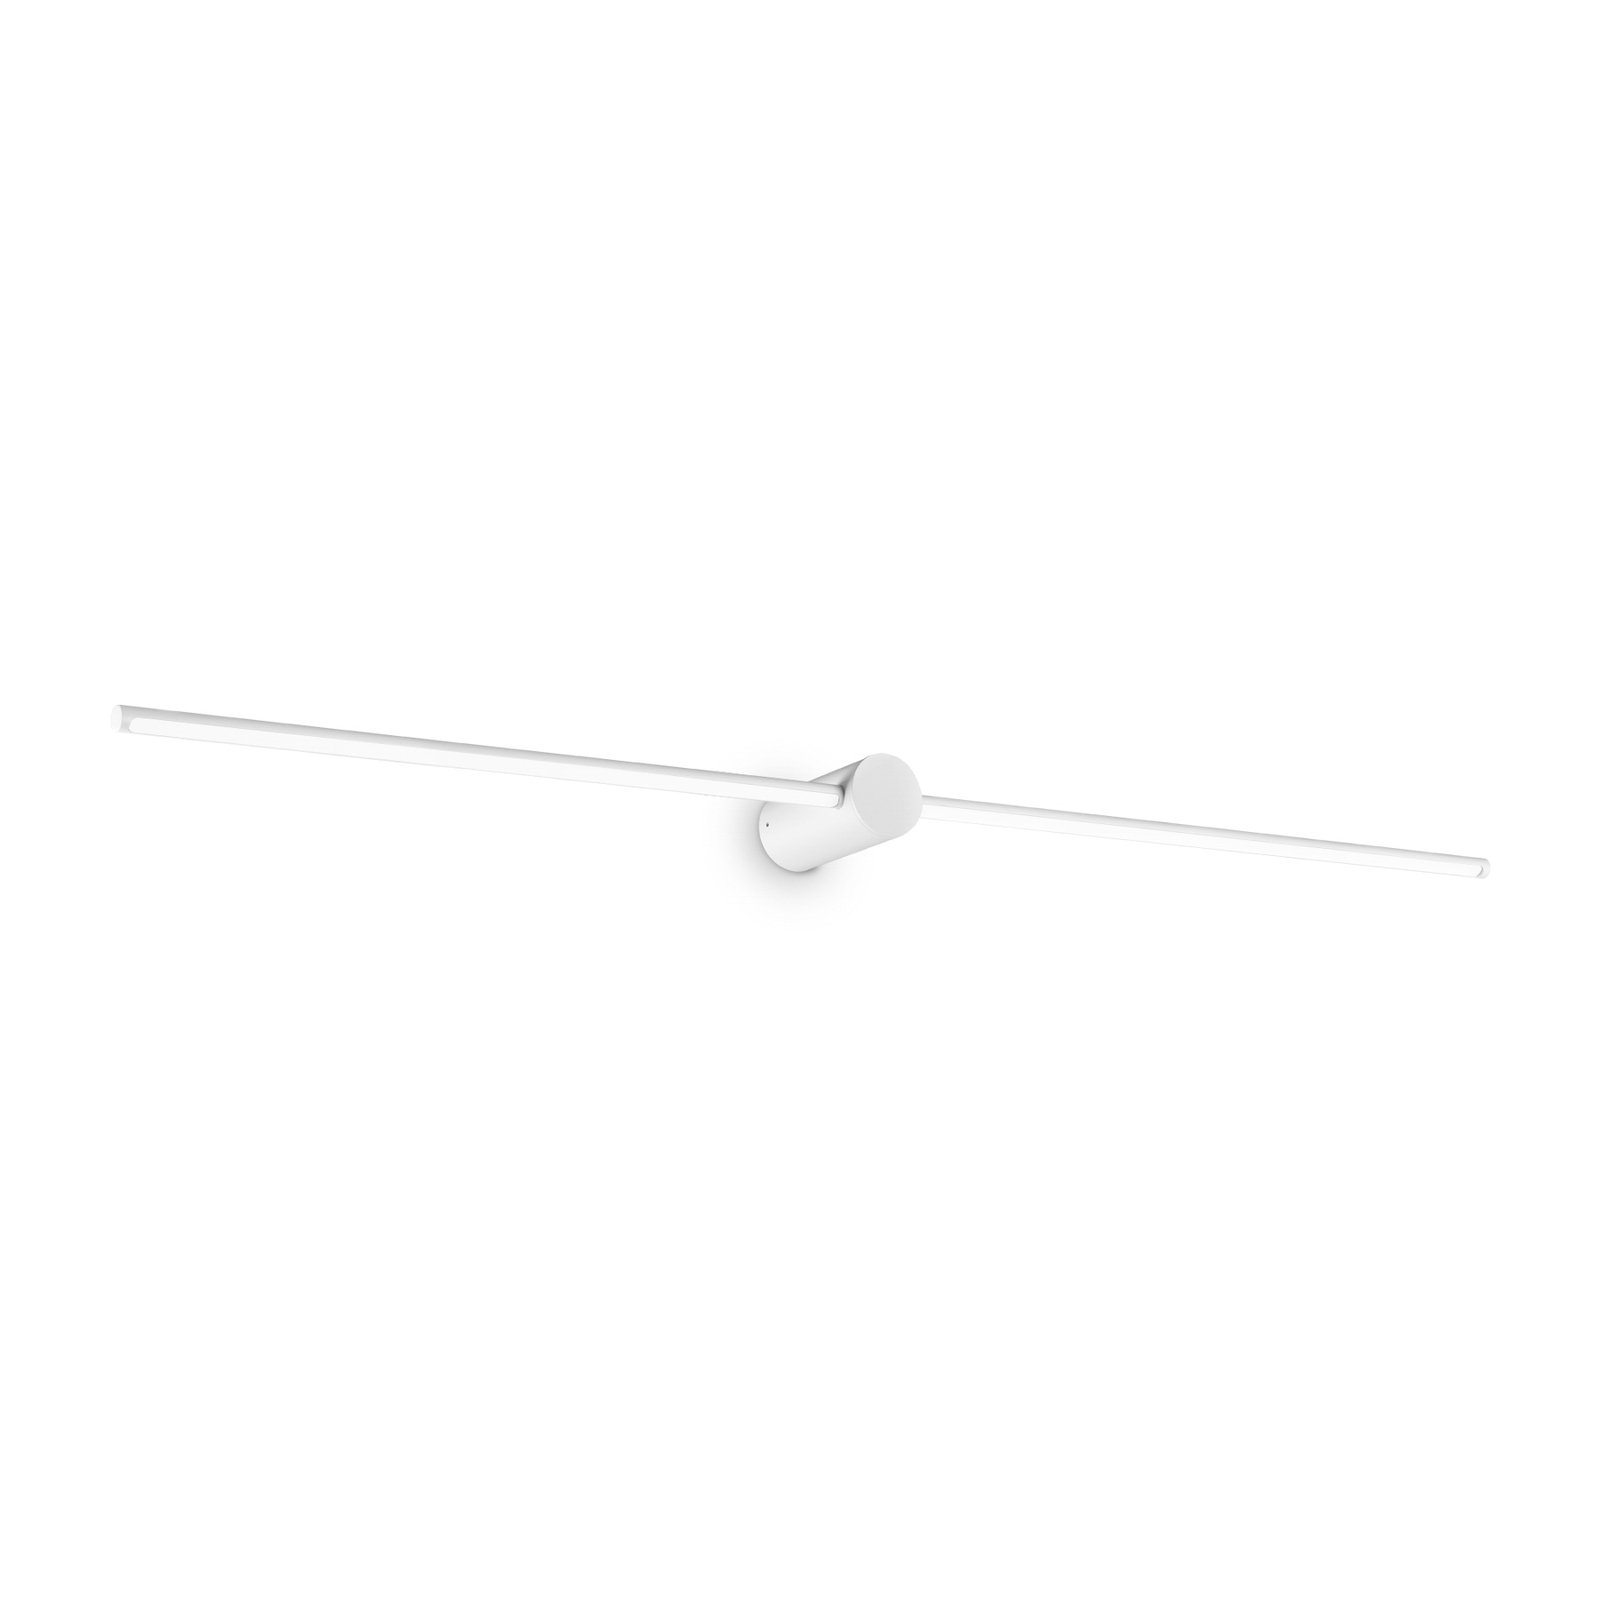 Kúpeľňové nástenné svietidlo Ideal Lux LED Filo biele, šírka 115 cm, kov